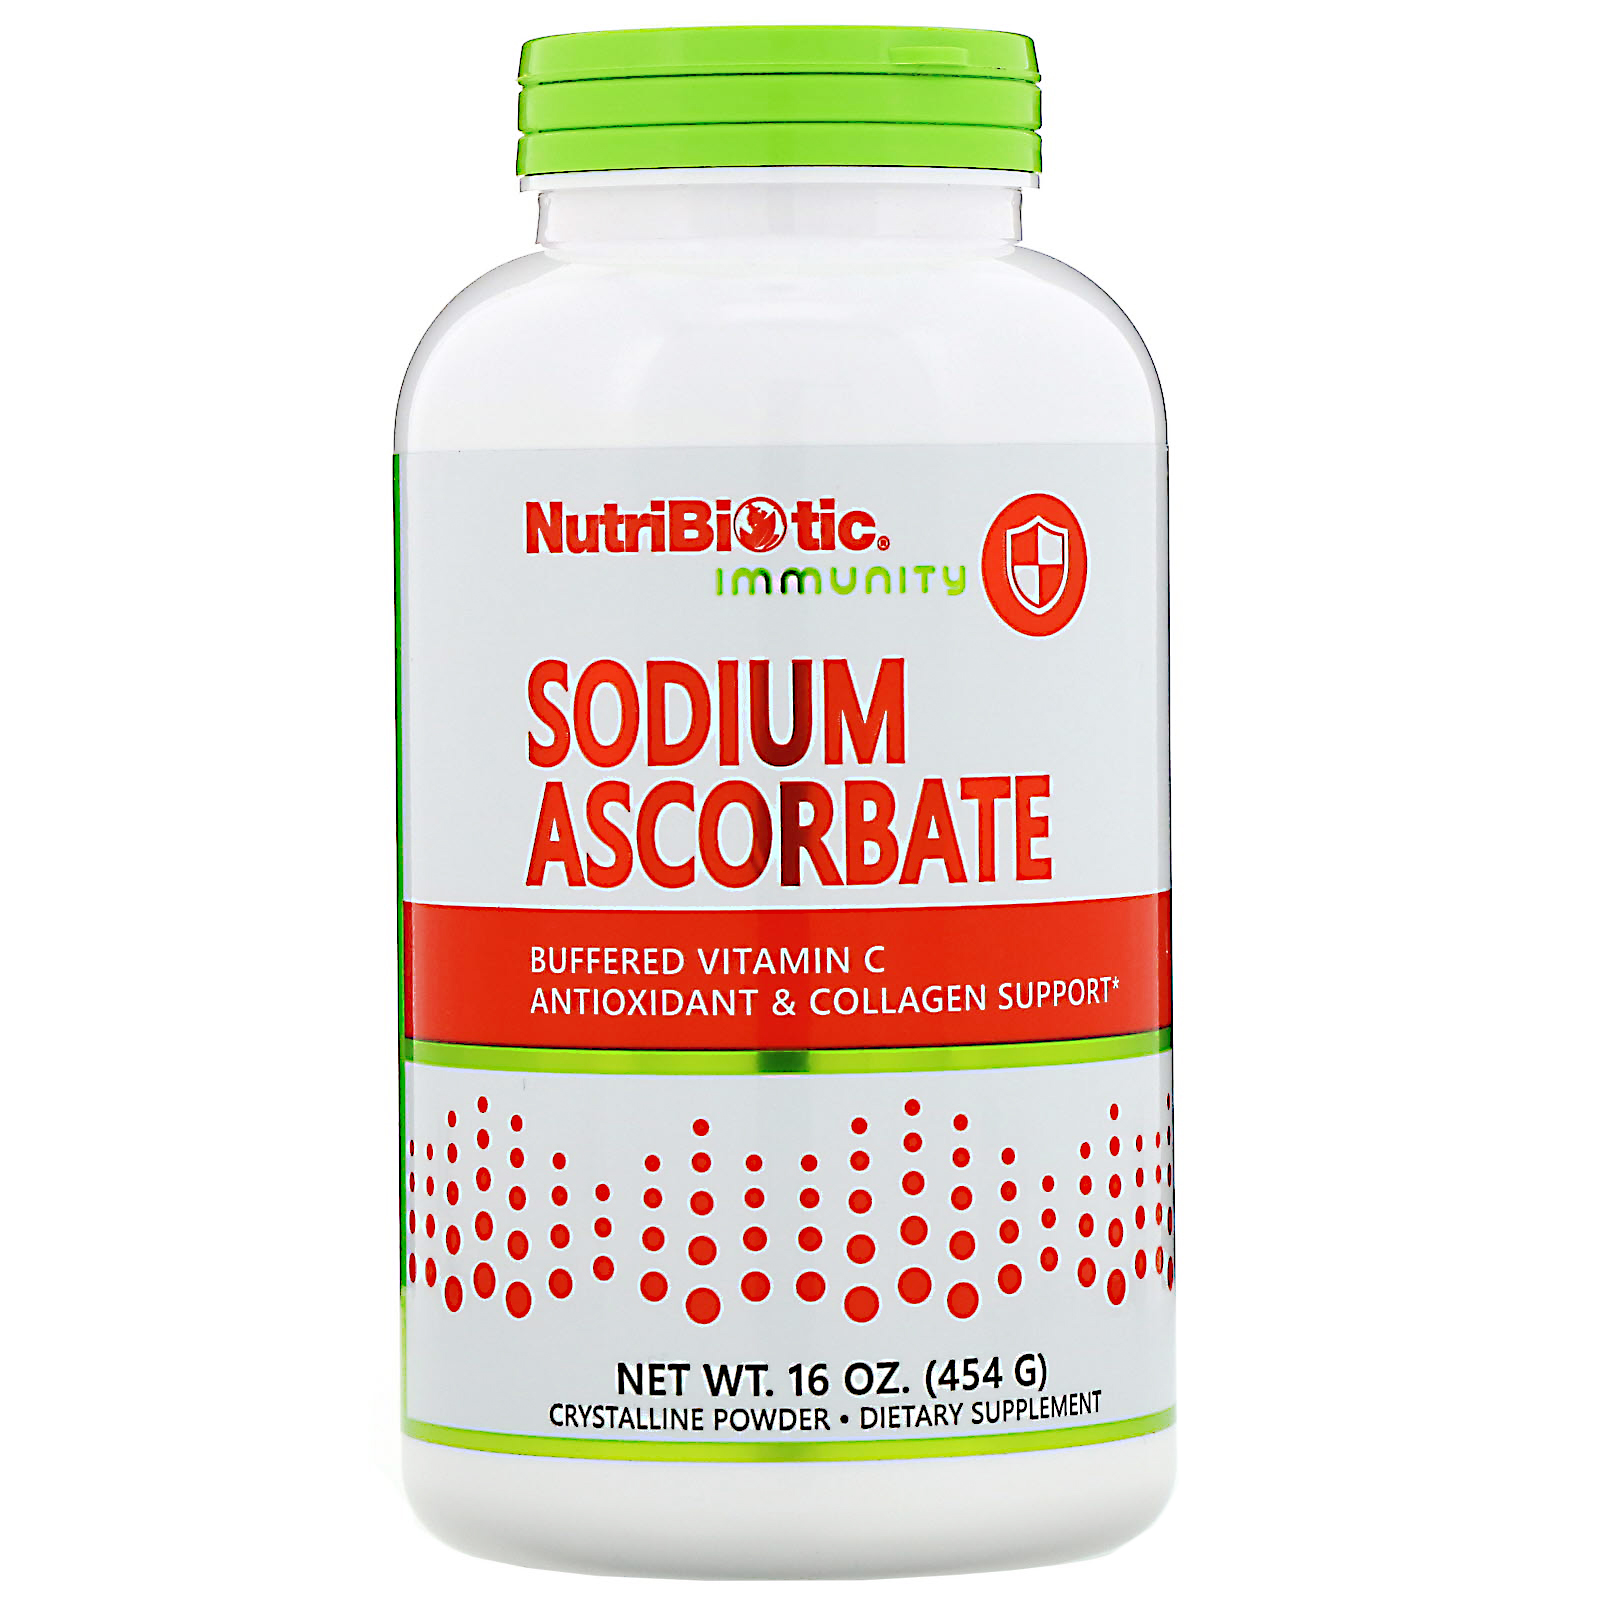 NutriBiotic Sodium Ascorbate Crystalline Powder 16 oz 454 g Egg-Free, 2